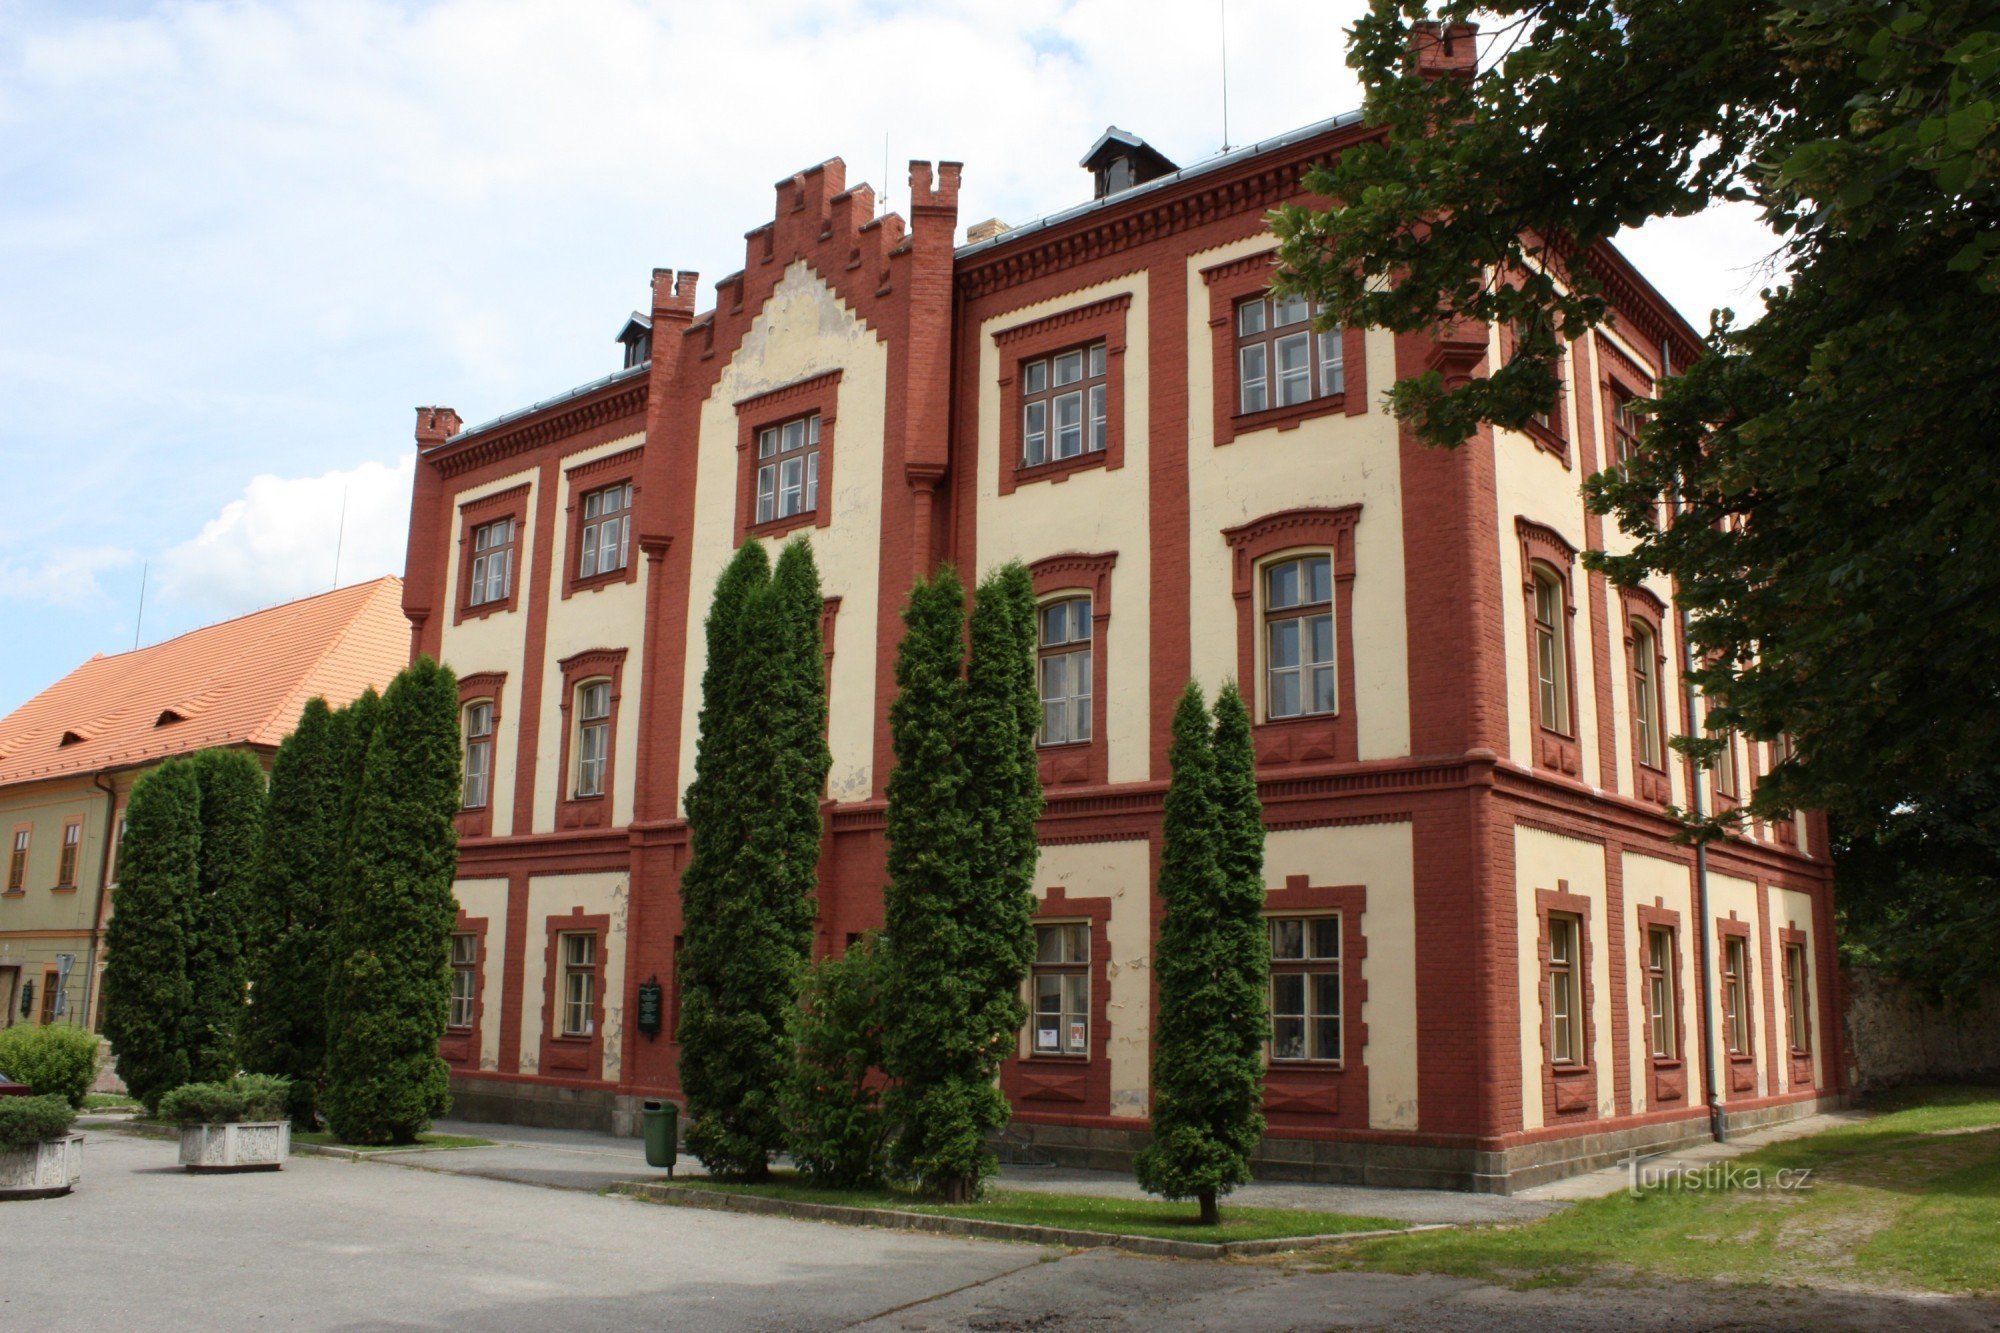 Tòa nhà tân Gothic của trường học cũ ở Netolice